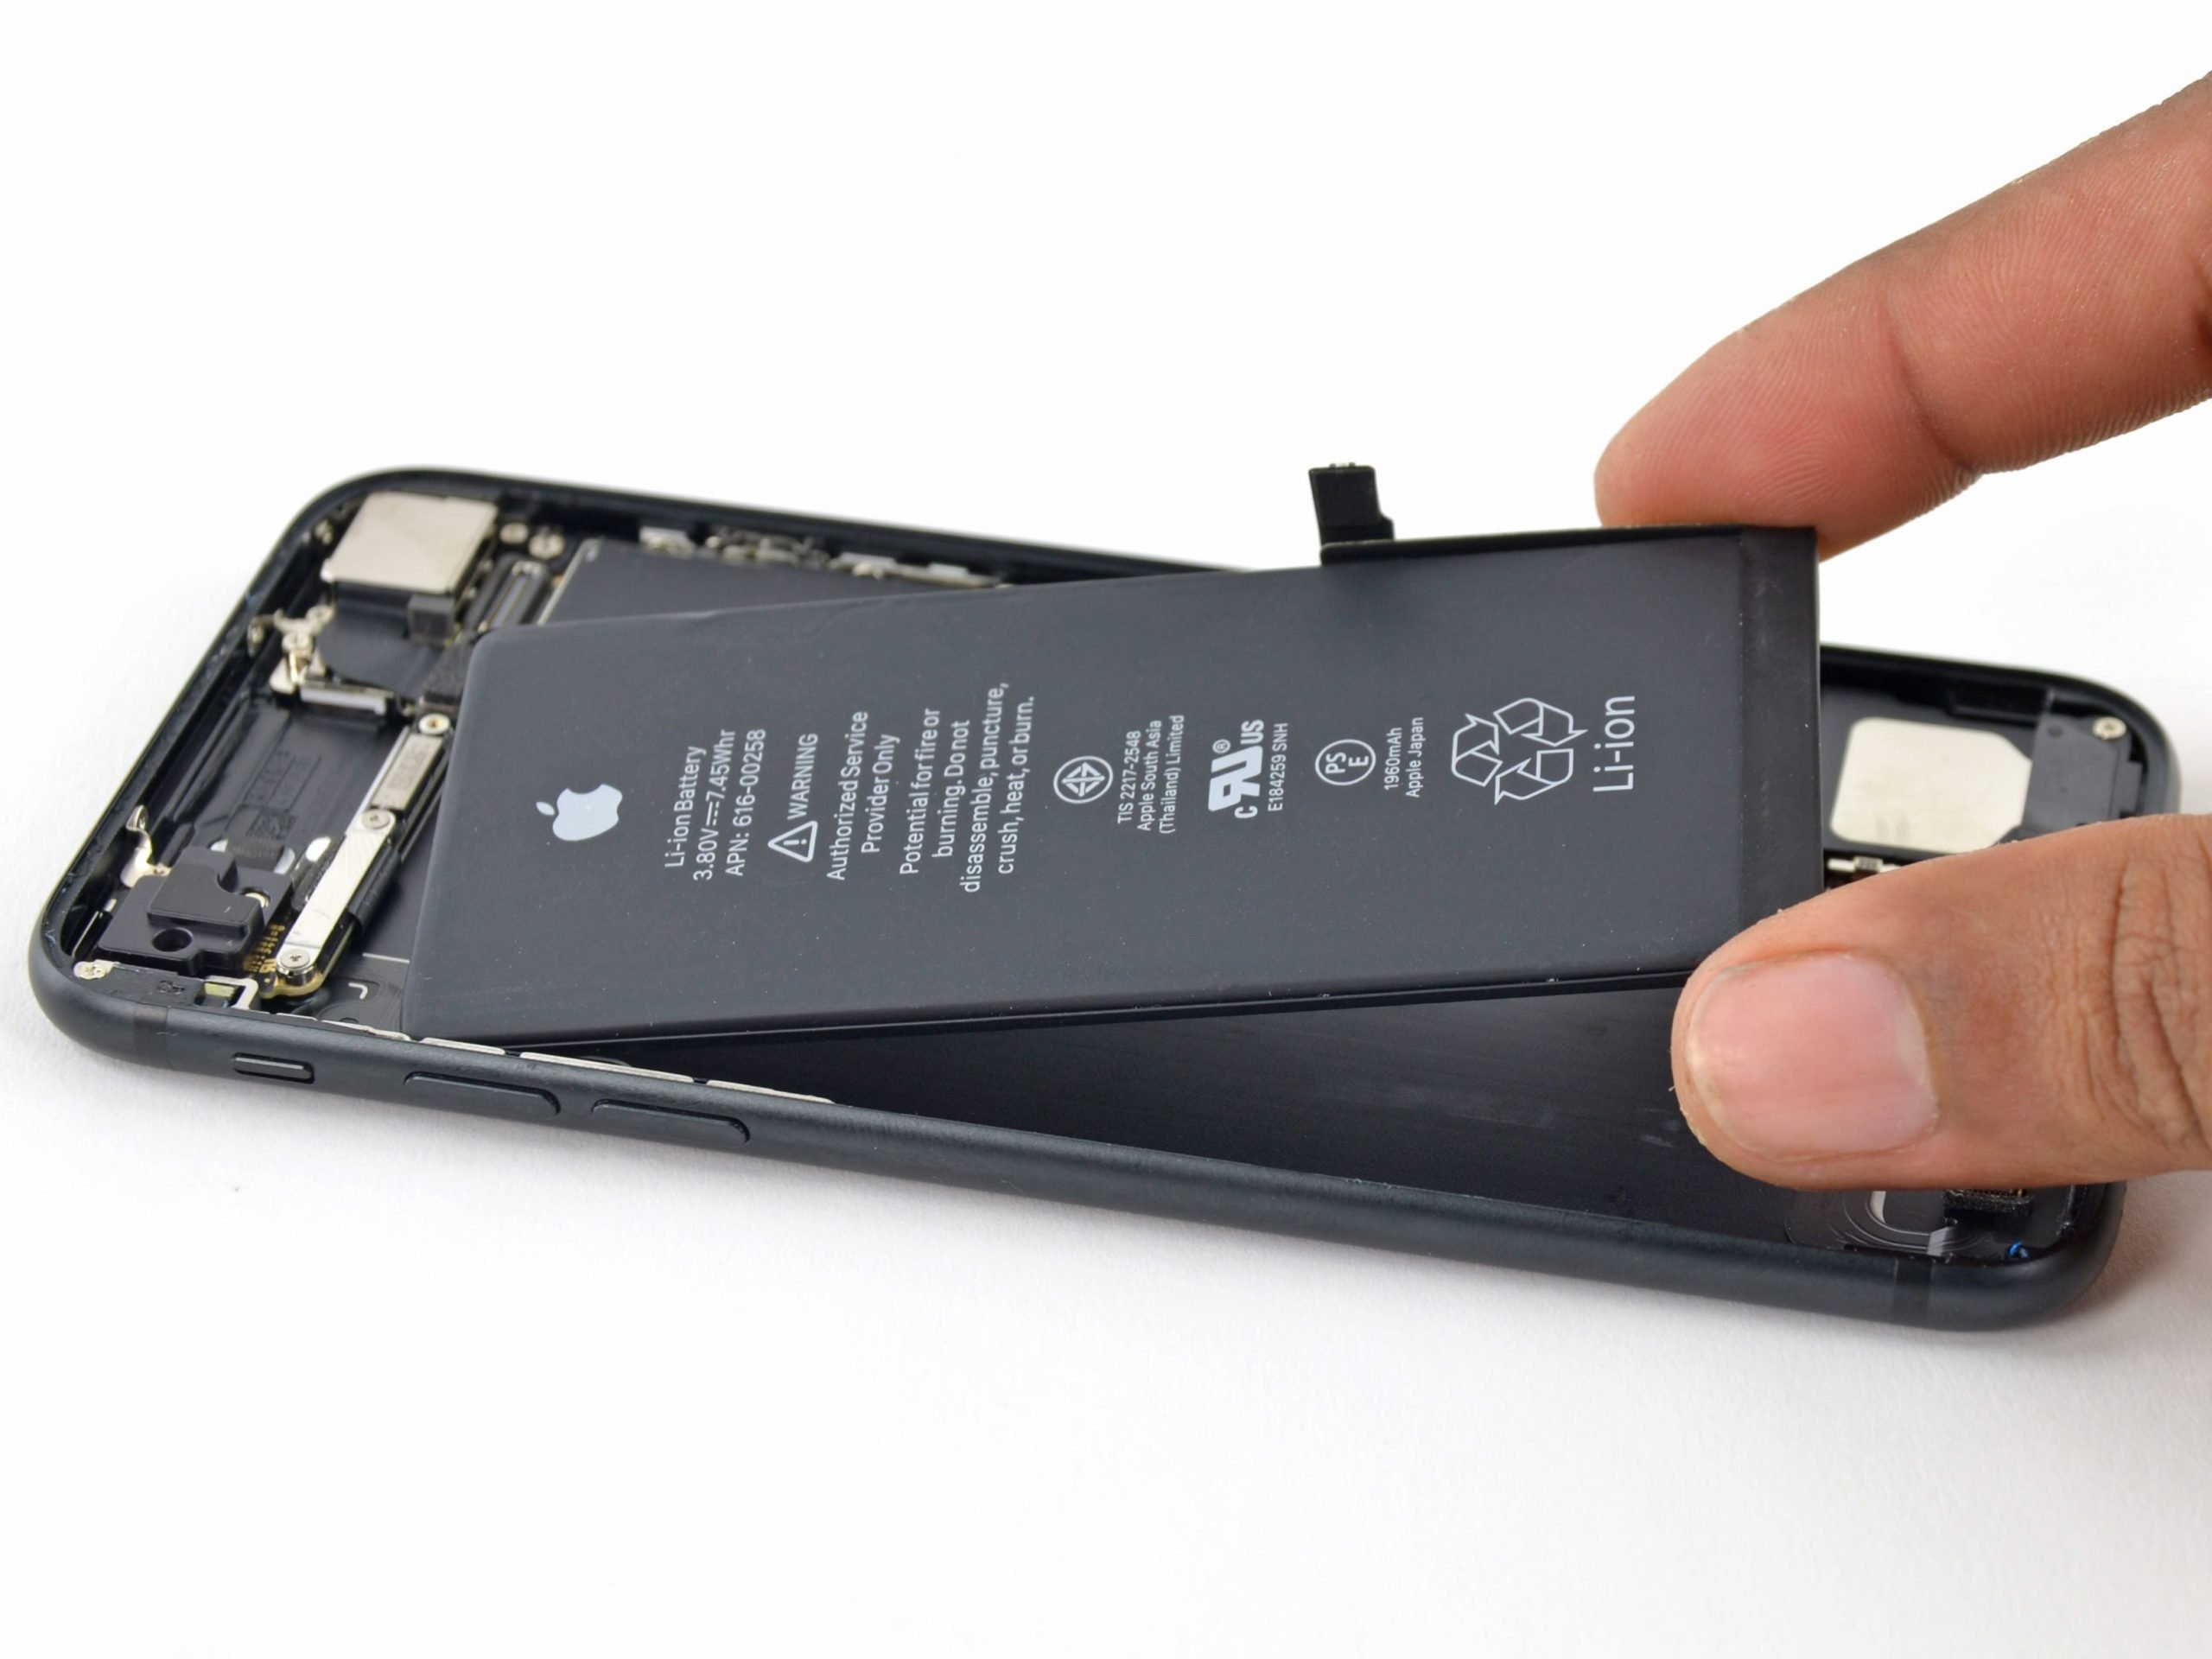  Apple scumpeşte bateriile de schimb